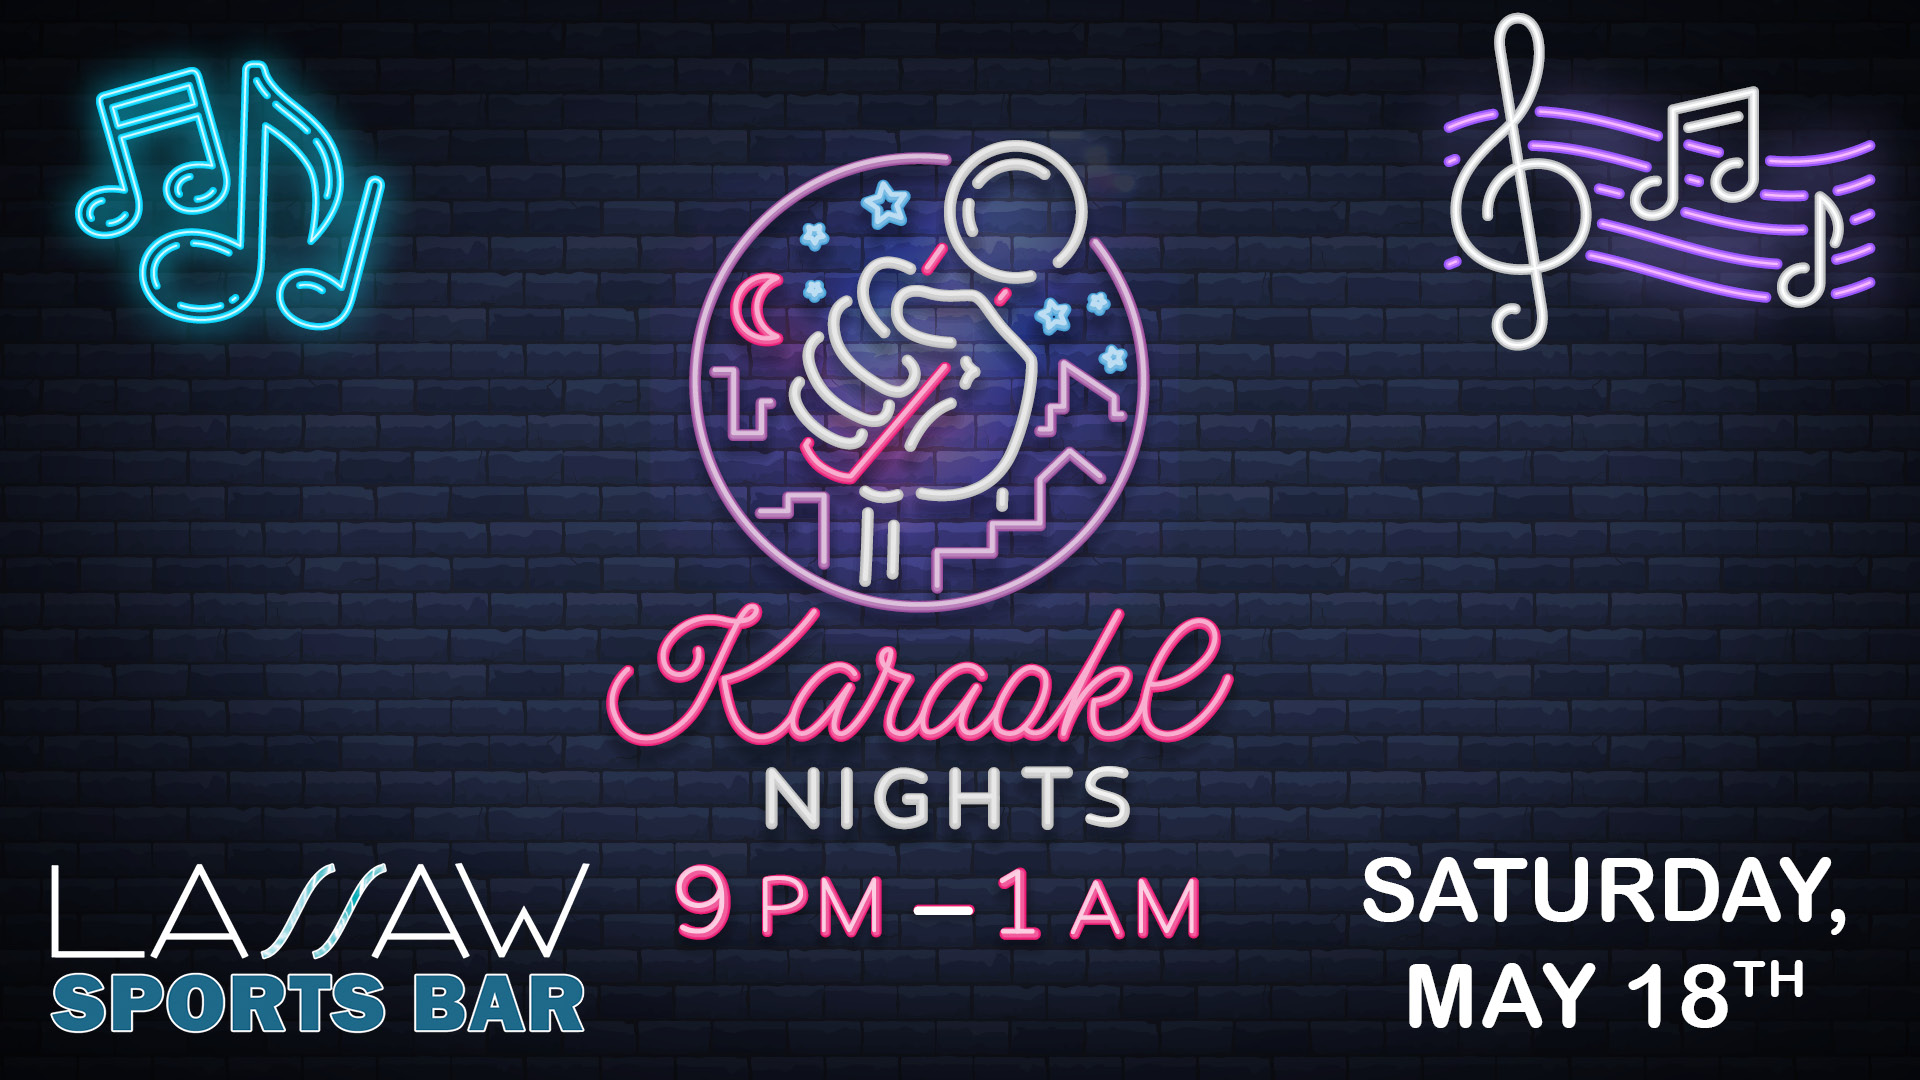 Karaoke night, Karaoke event, Karaoke Saturday night, Karaoke Saturdays, Karaoke at Lassaw, Karaoke at Gray Wolf